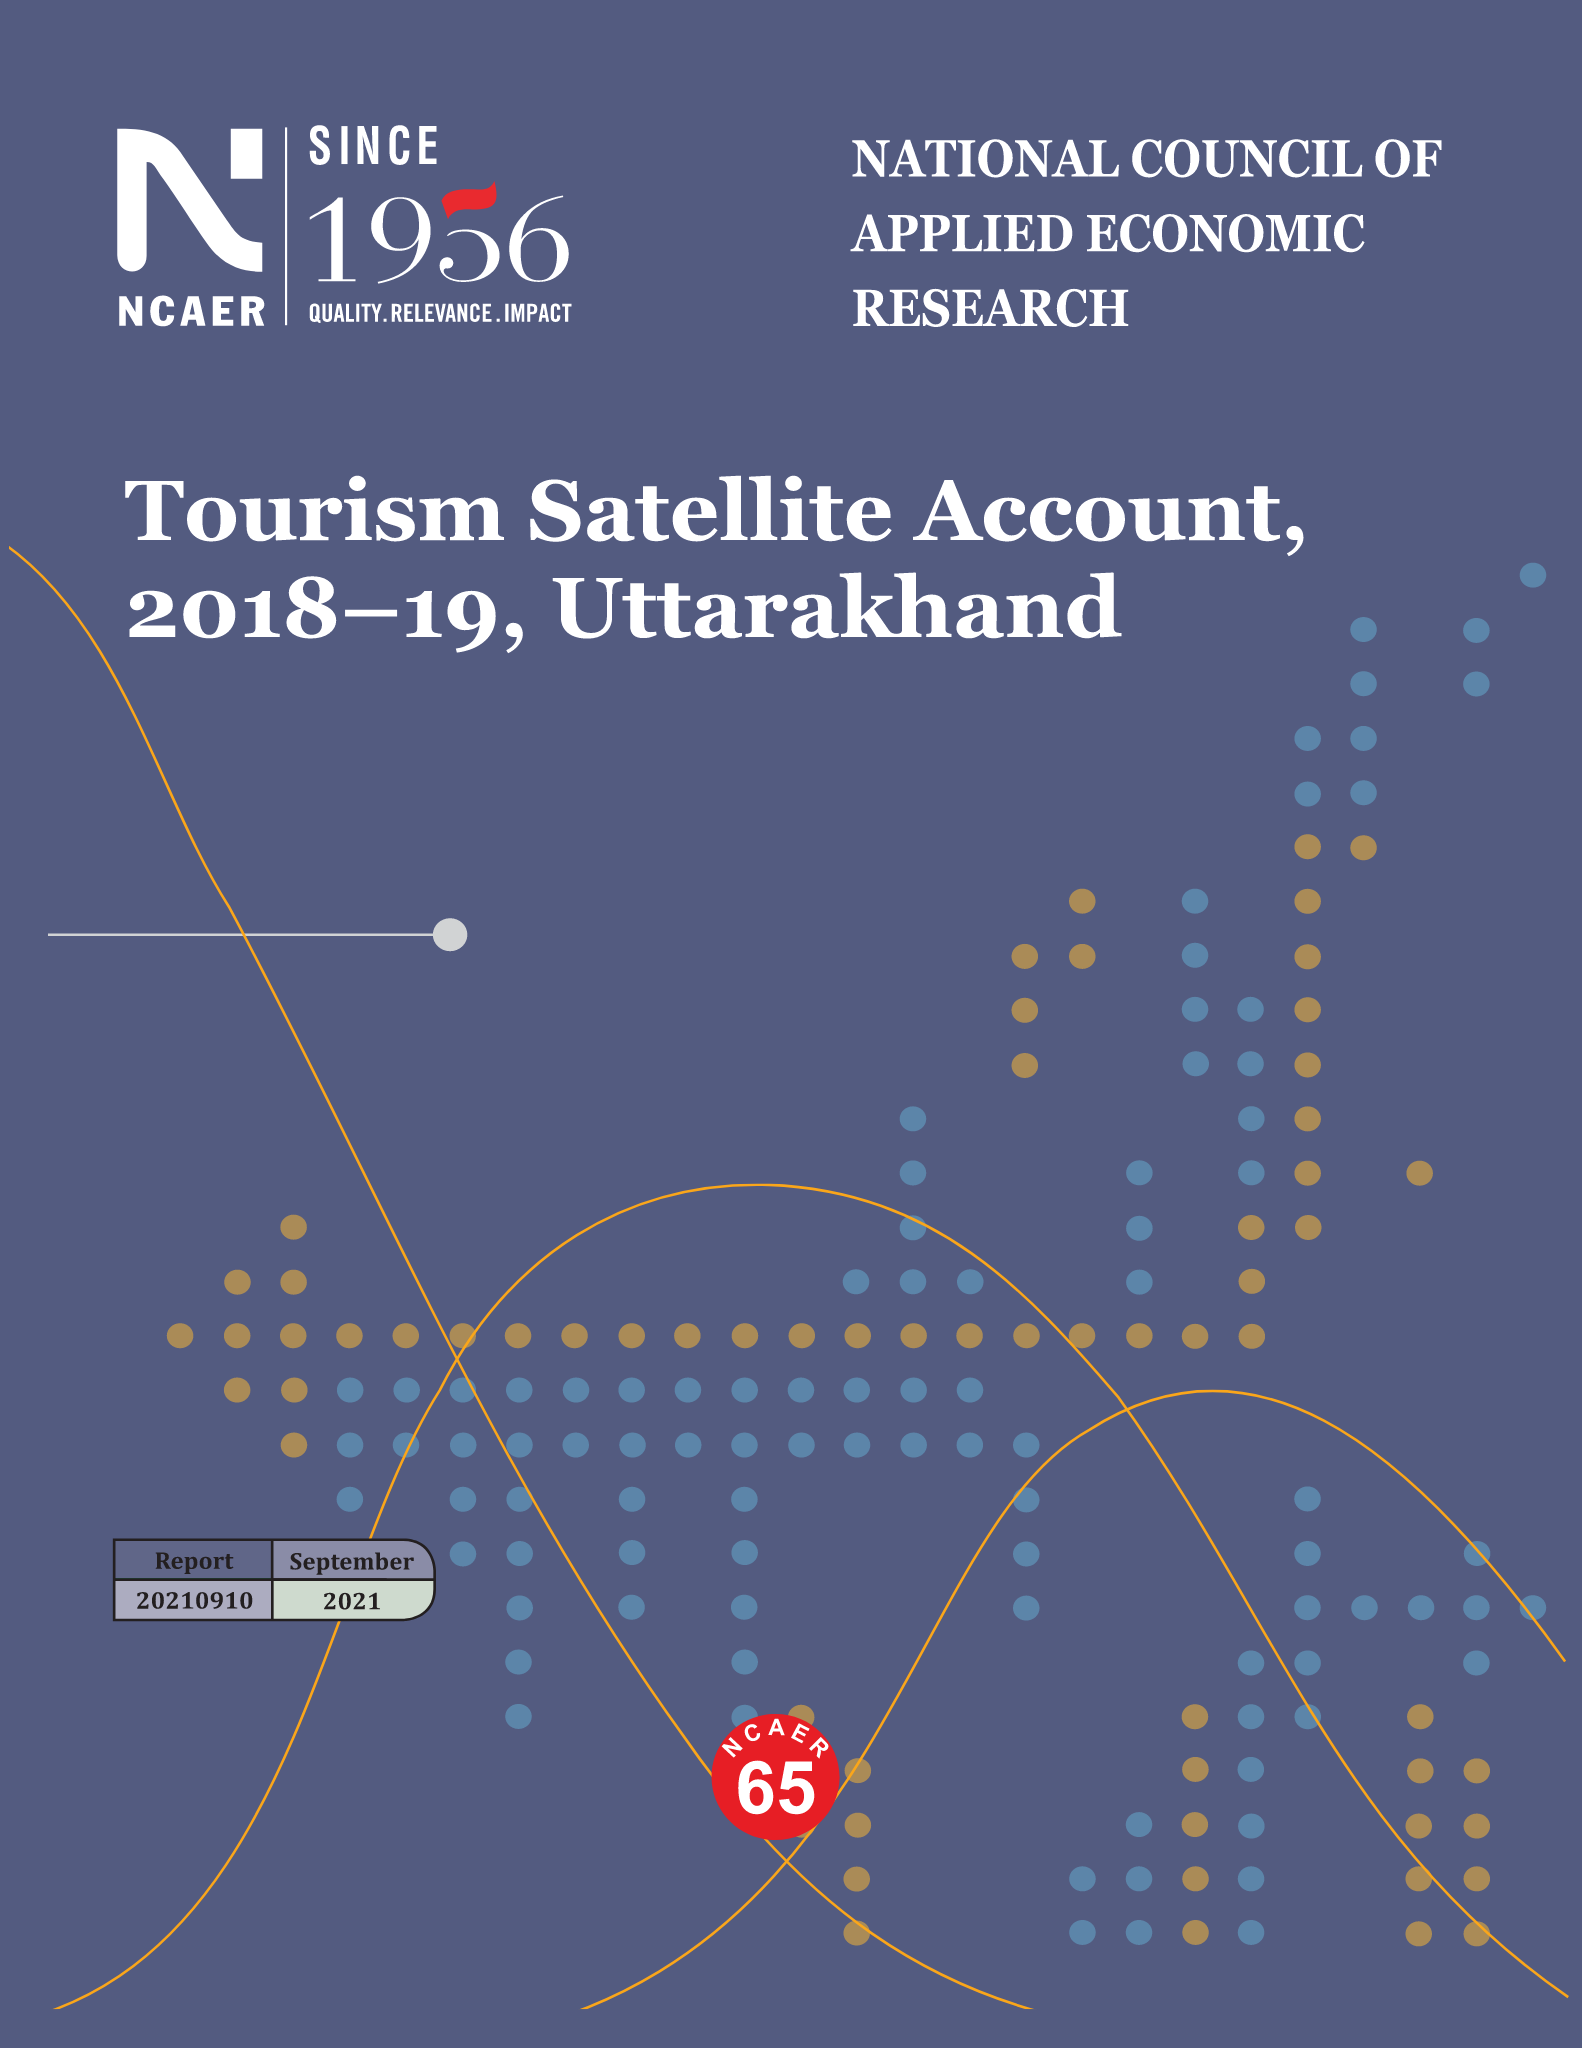 Tourism Satellite Account 2018-19, Uttarakhand